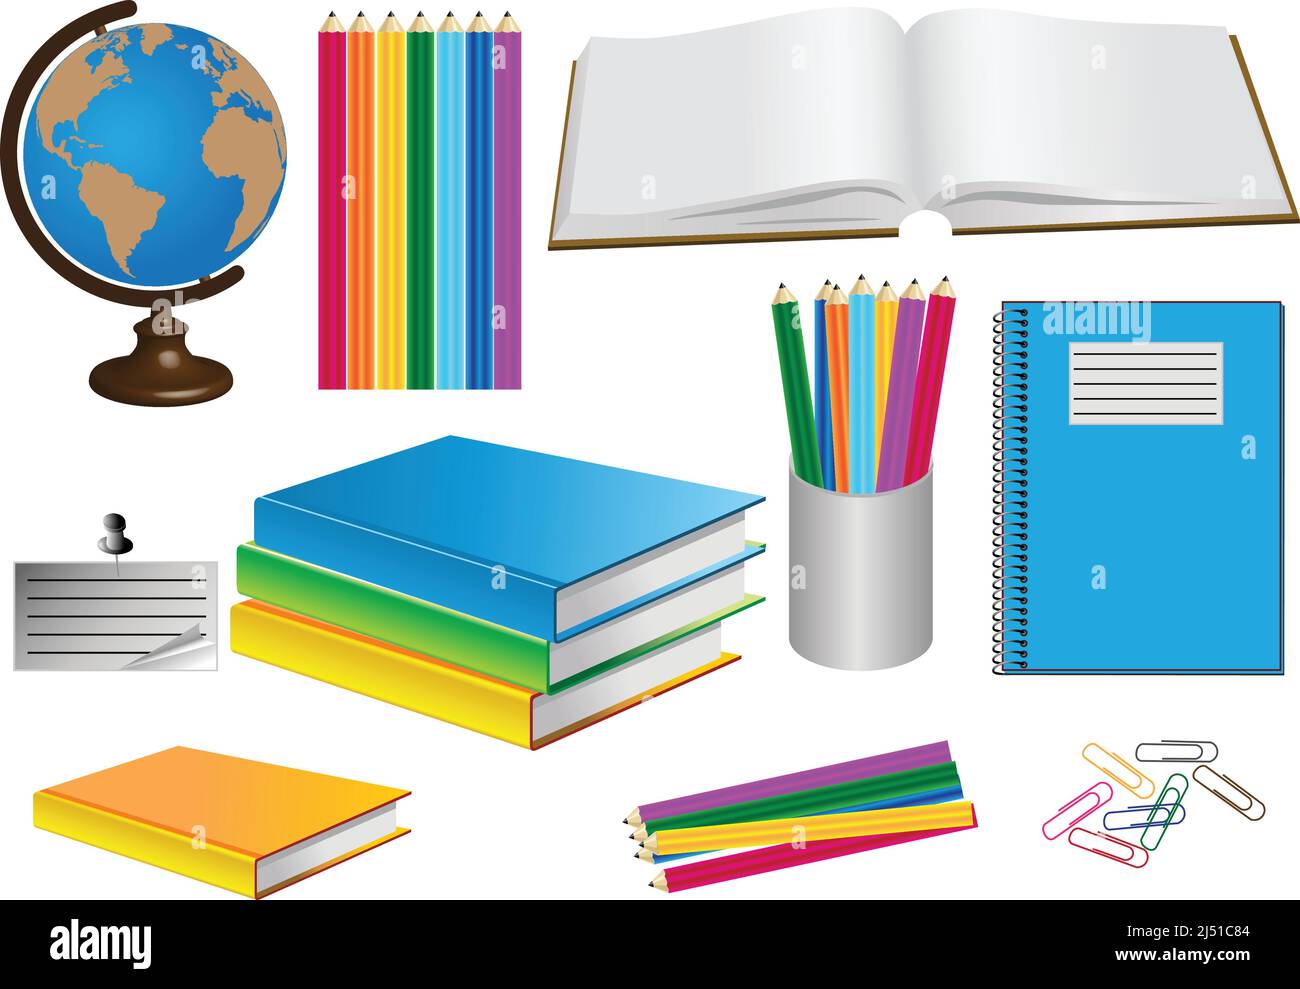 Immagini a colori dei beni scolastici: Globo, copy-book, libri di testo, matite, paper-clip Illustrazione Vettoriale